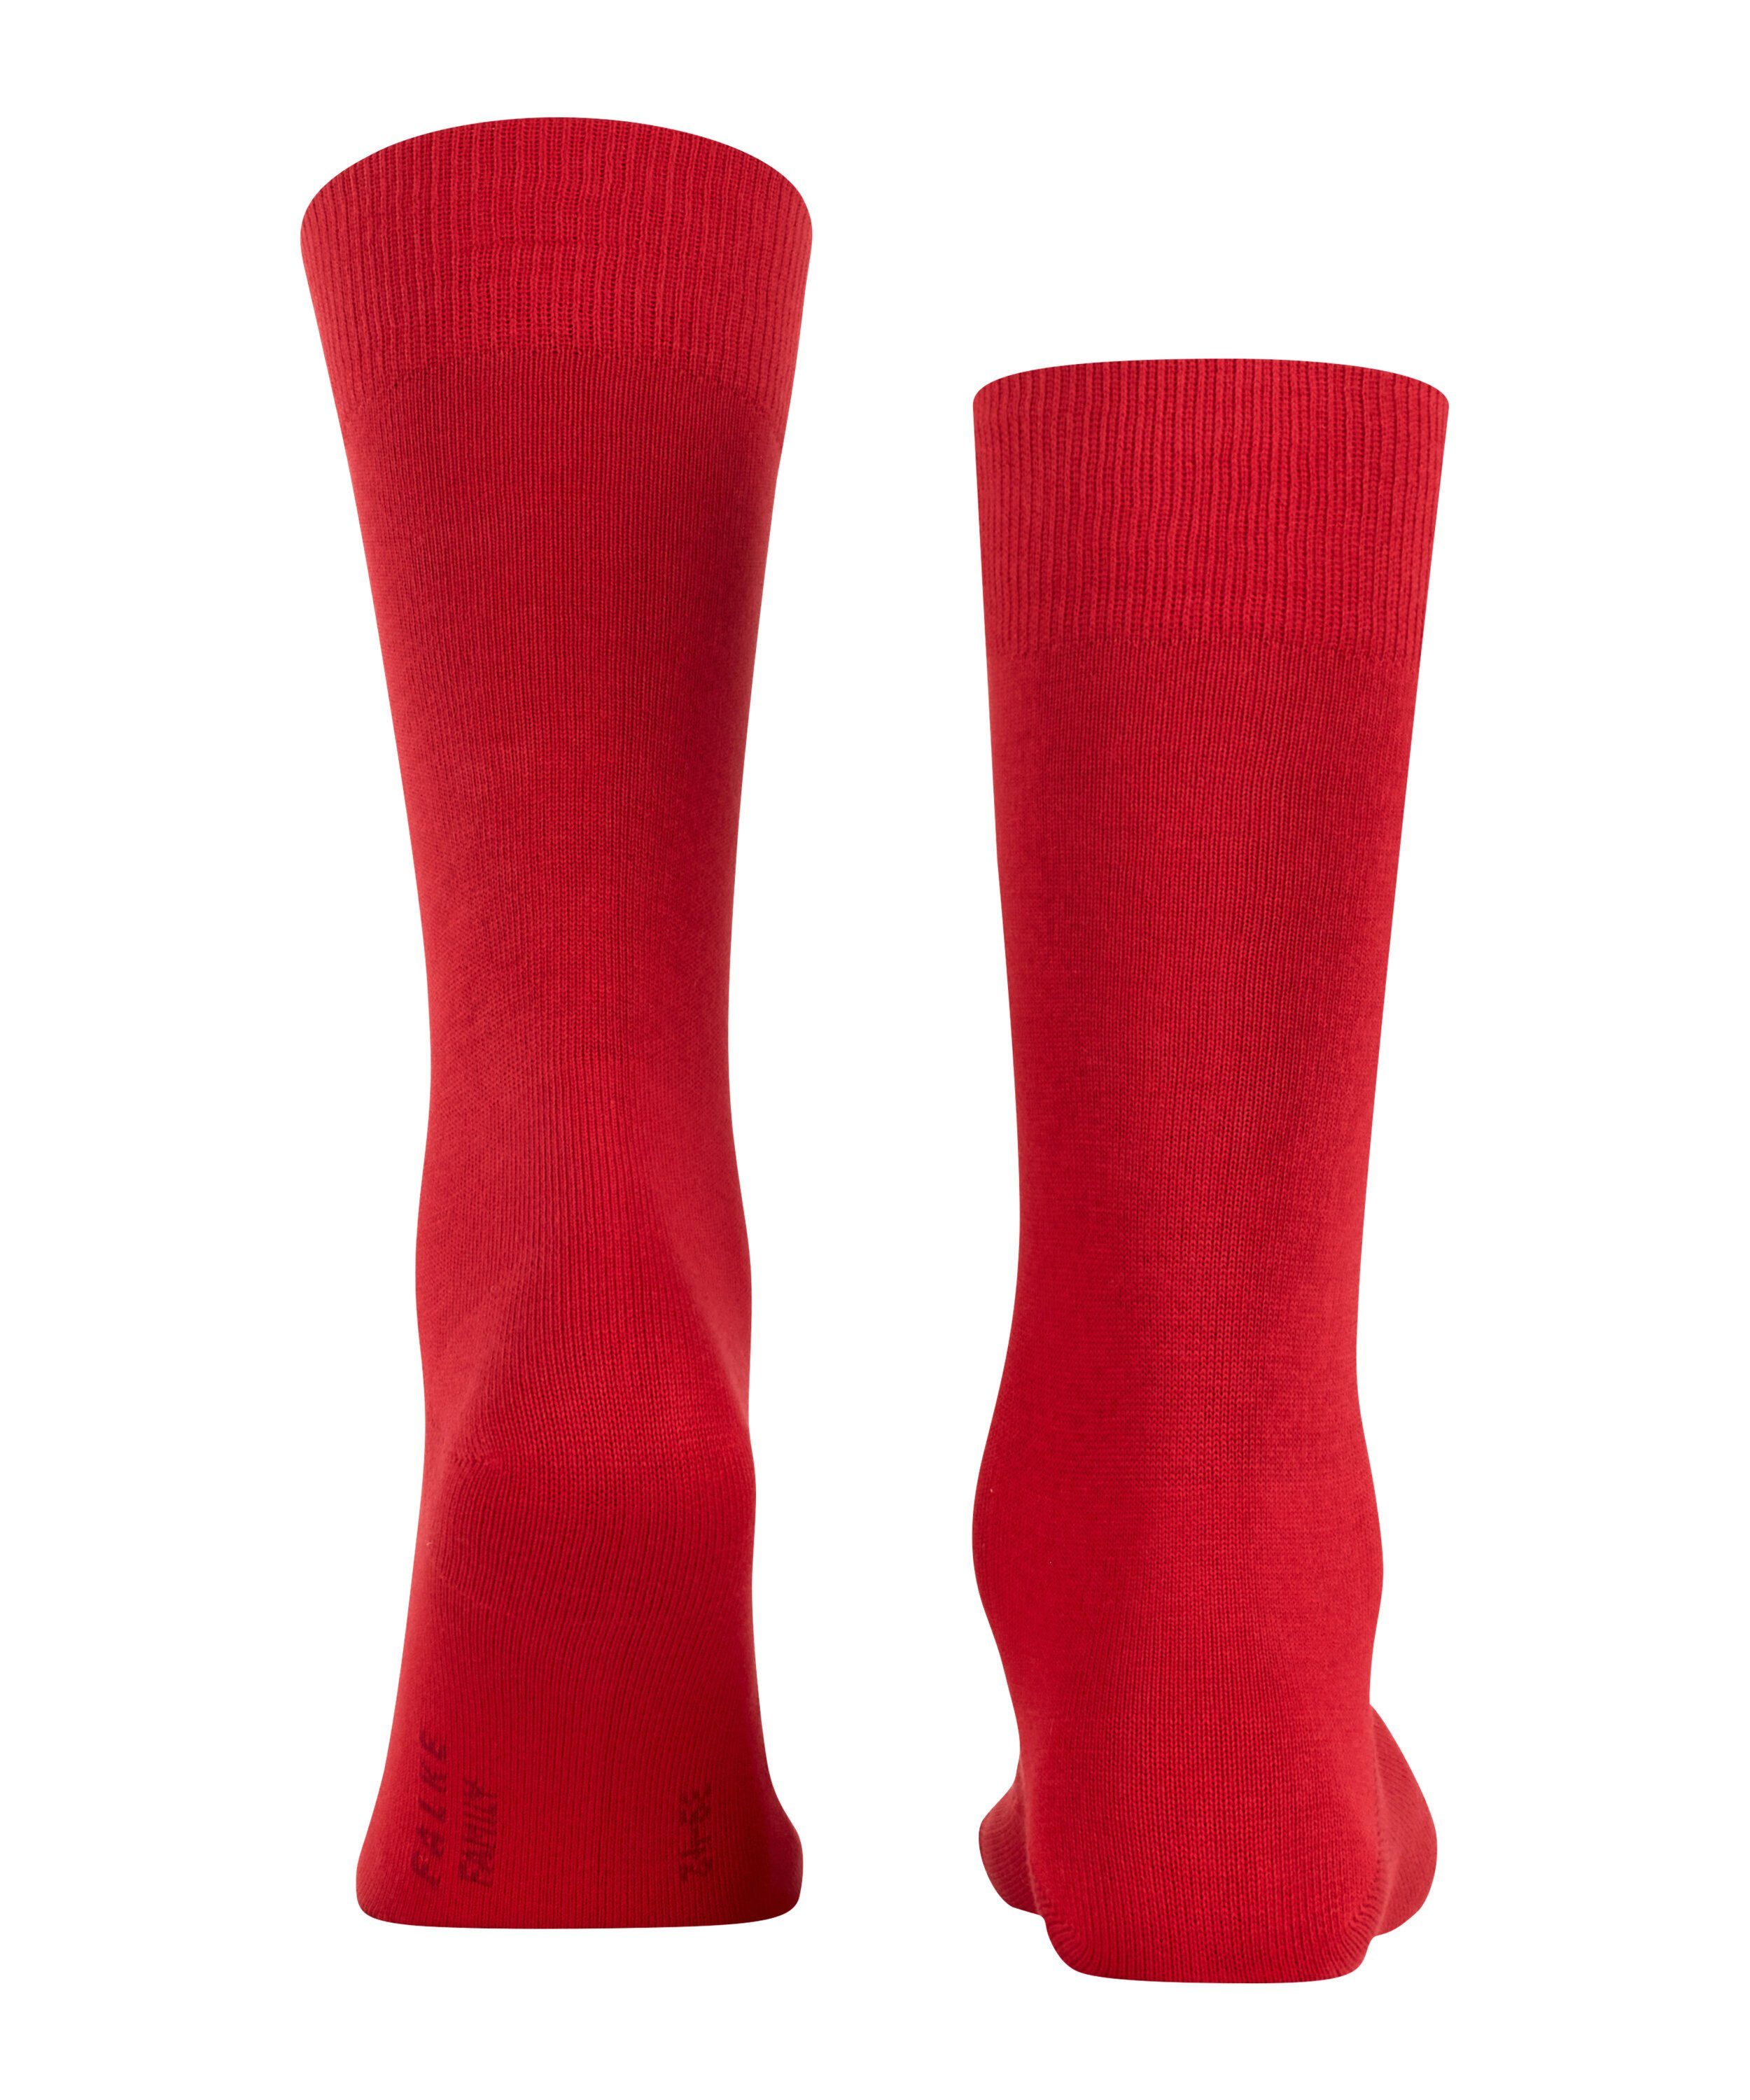 Family Socken FALKE (8228) (1-Paar) scarlet